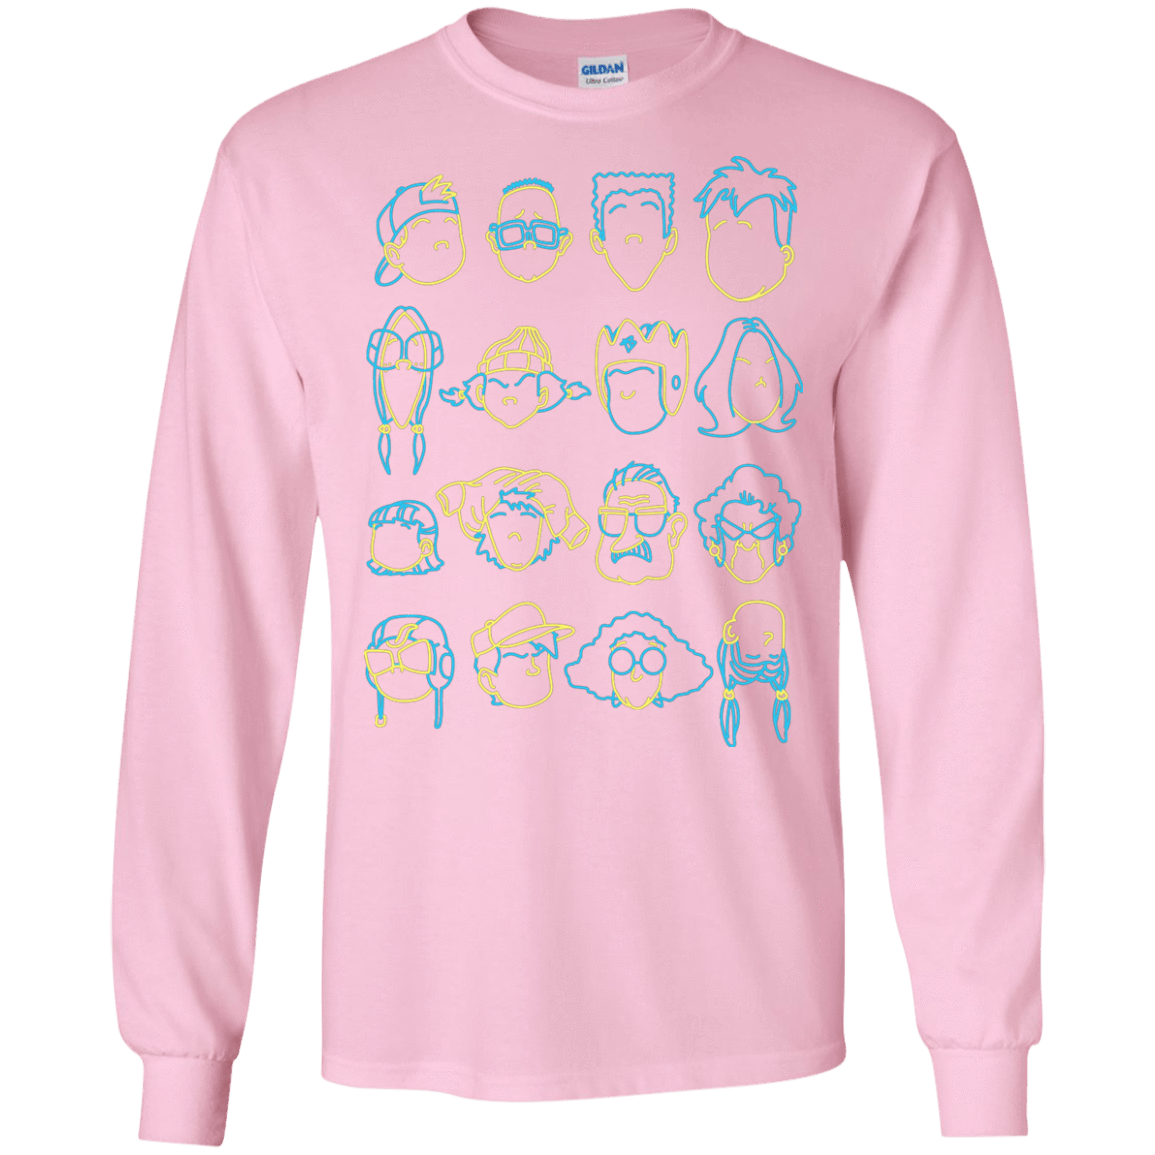 T-Shirts Light Pink / S RECESS Men's Long Sleeve T-Shirt